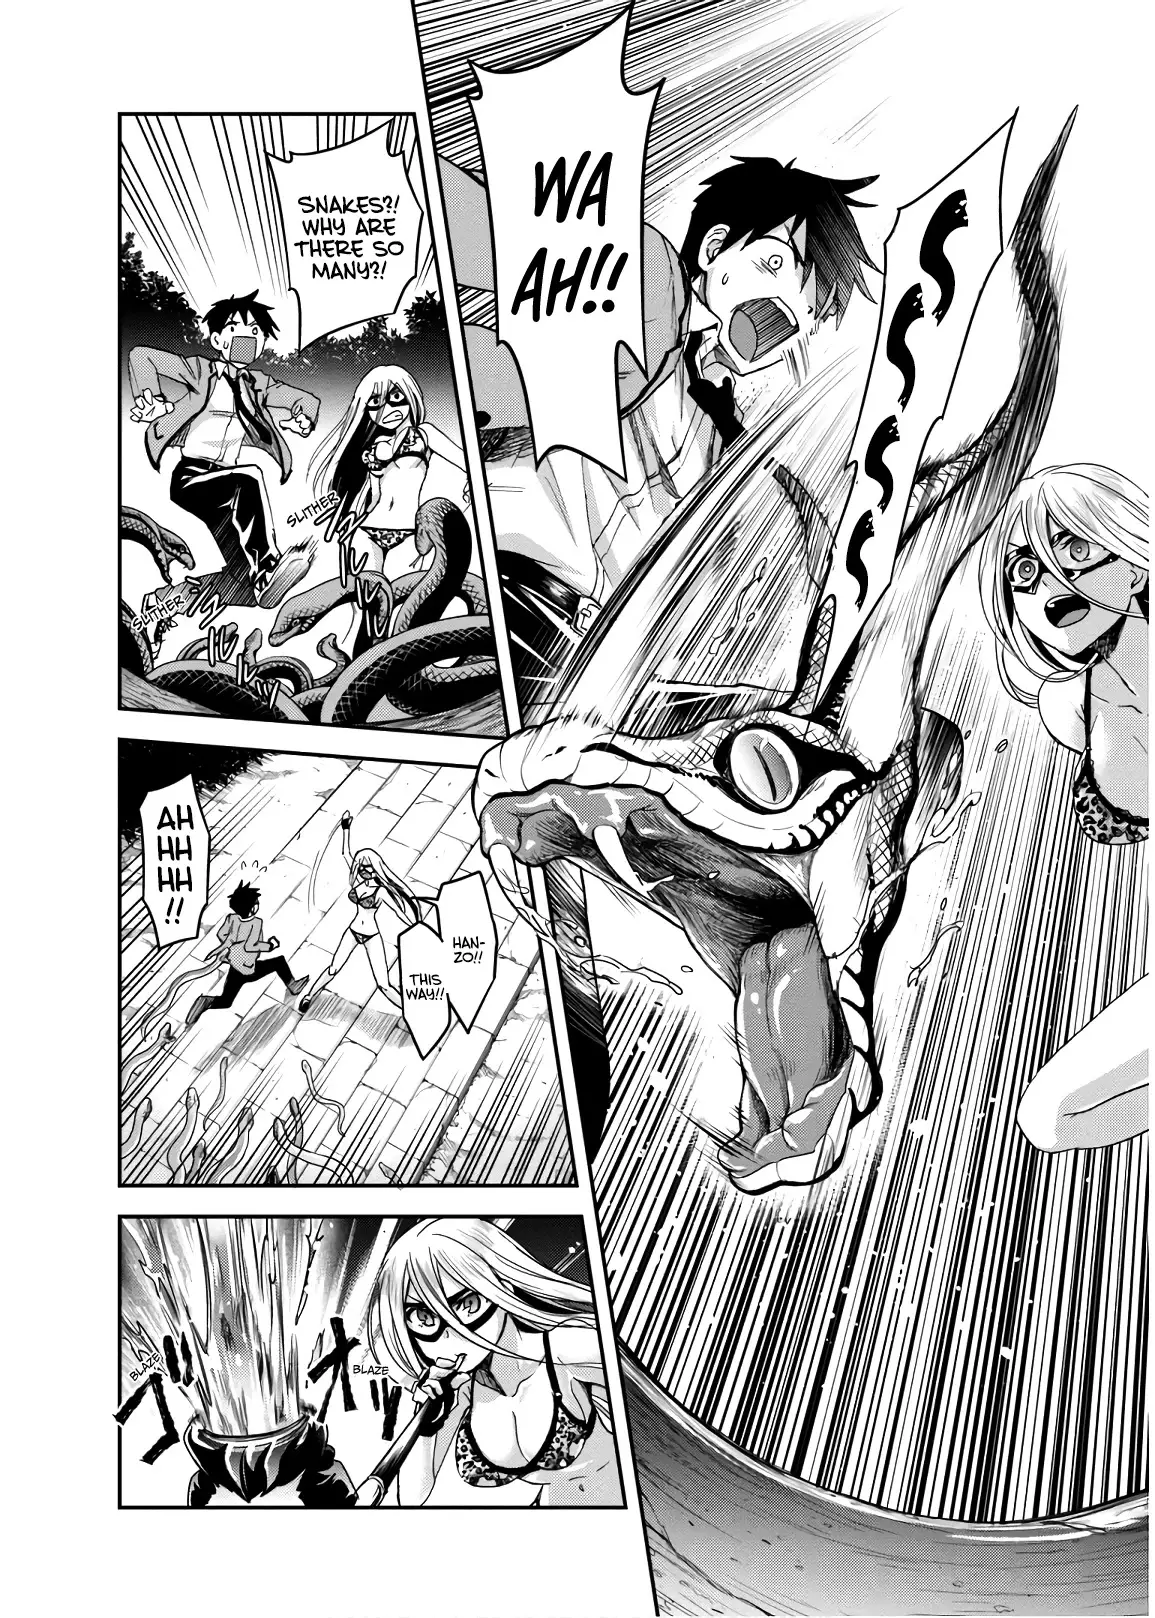 Shinobi Kill - 7 page 4